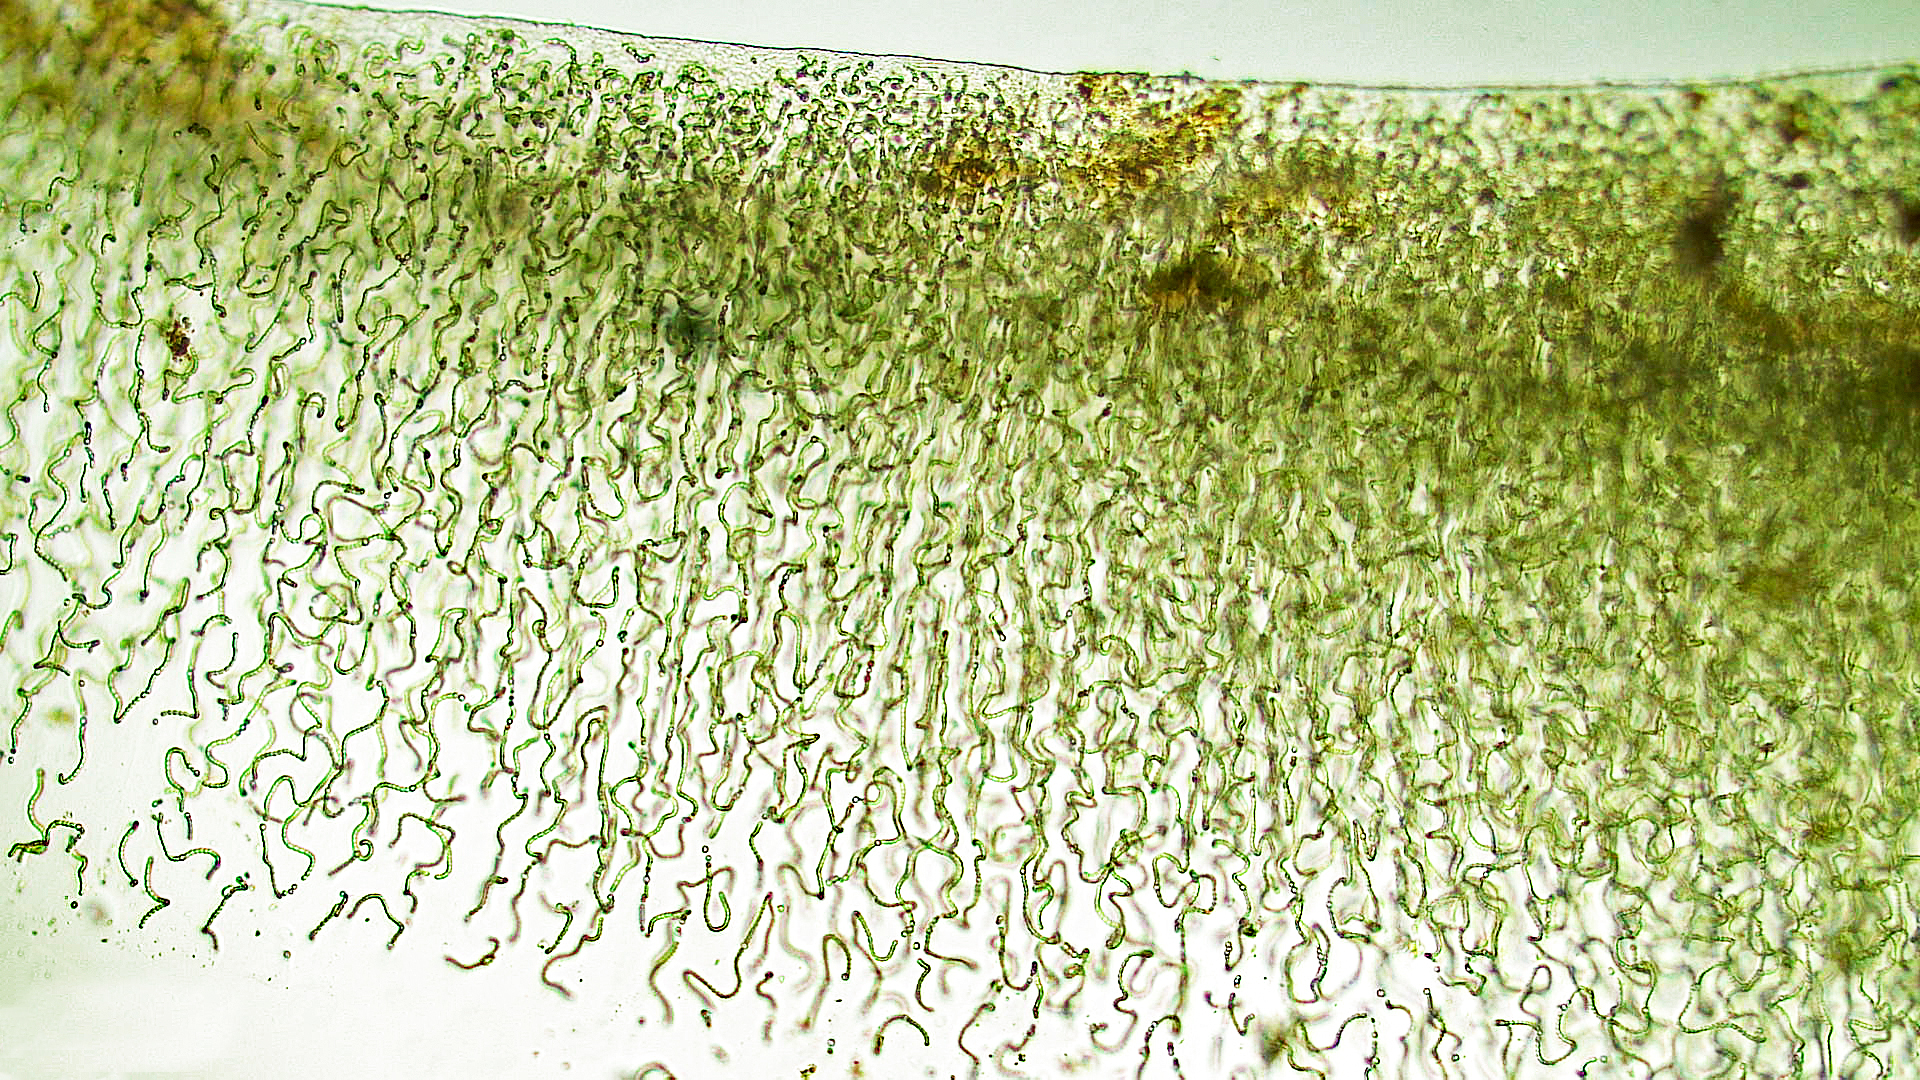 ./Cyanobacteria/Nostocales/Nostocaceae/Nostoc/pruniforme/nostoc-pruniforme-3.jpg